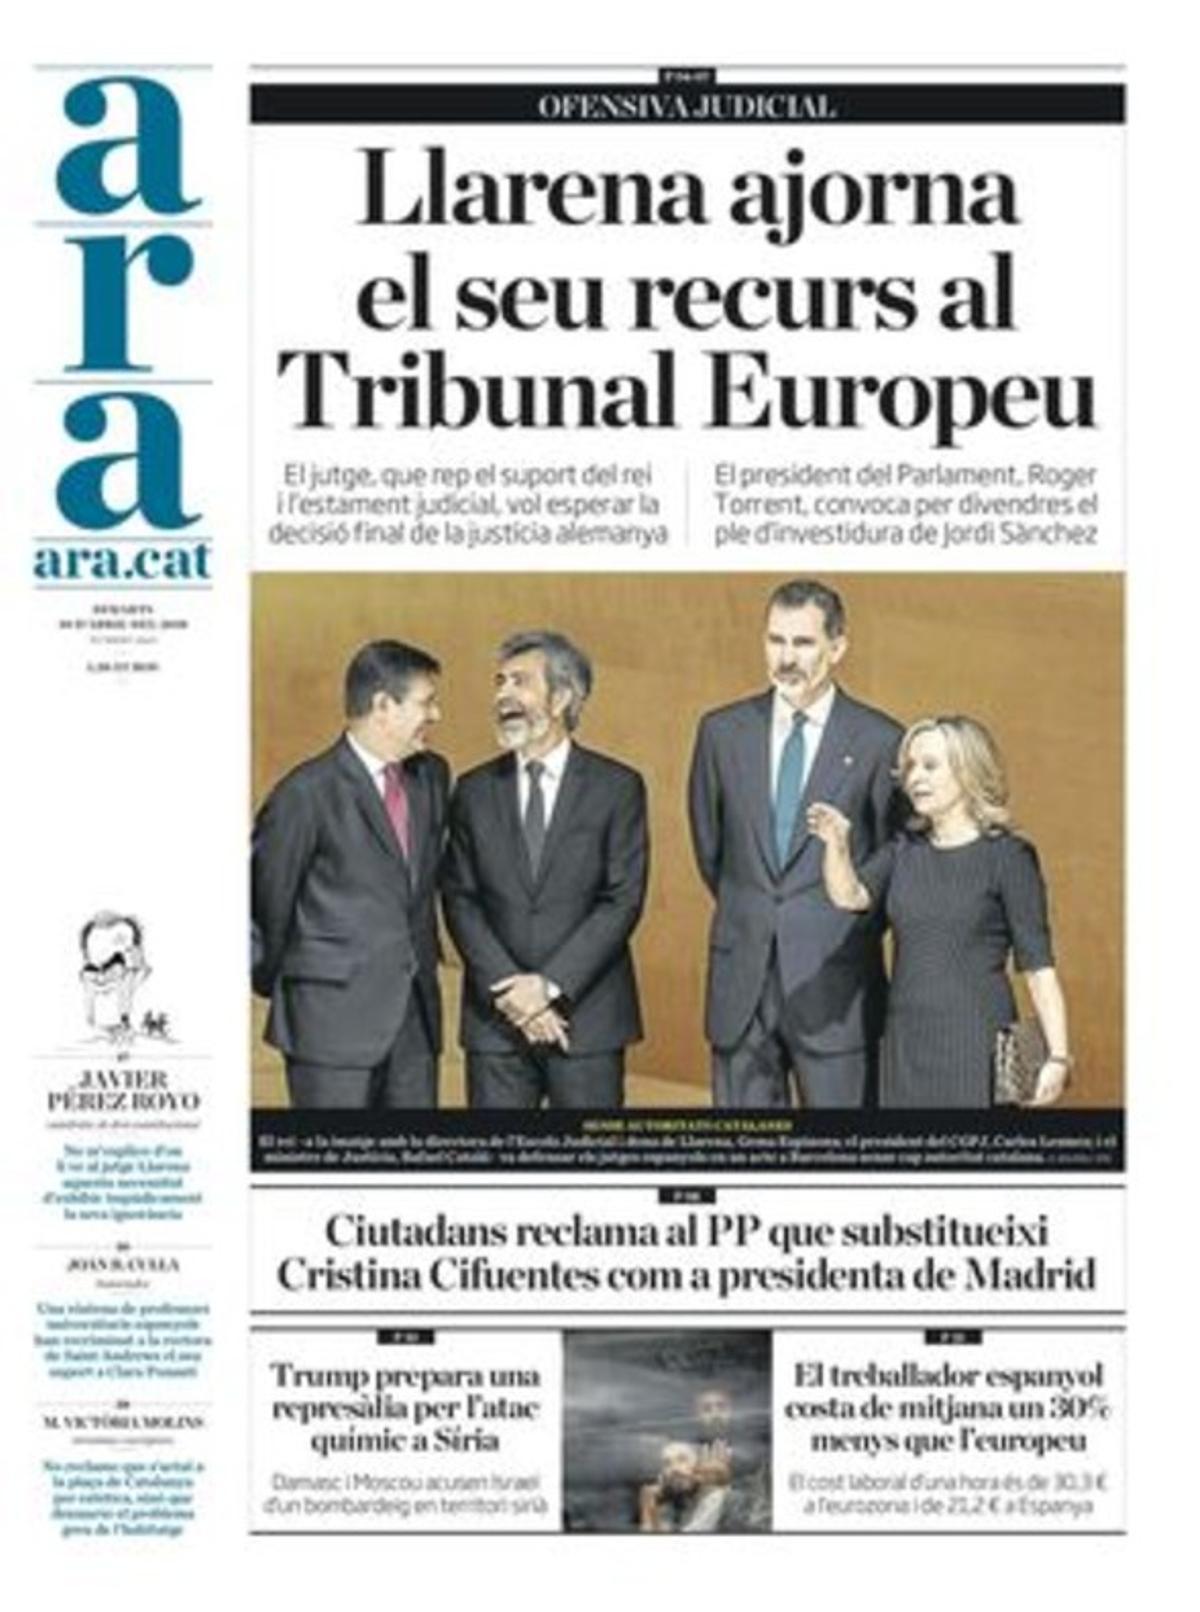 Rajoy sacrificará a Cifuentes; políticos alemanes dudan de la justicia española